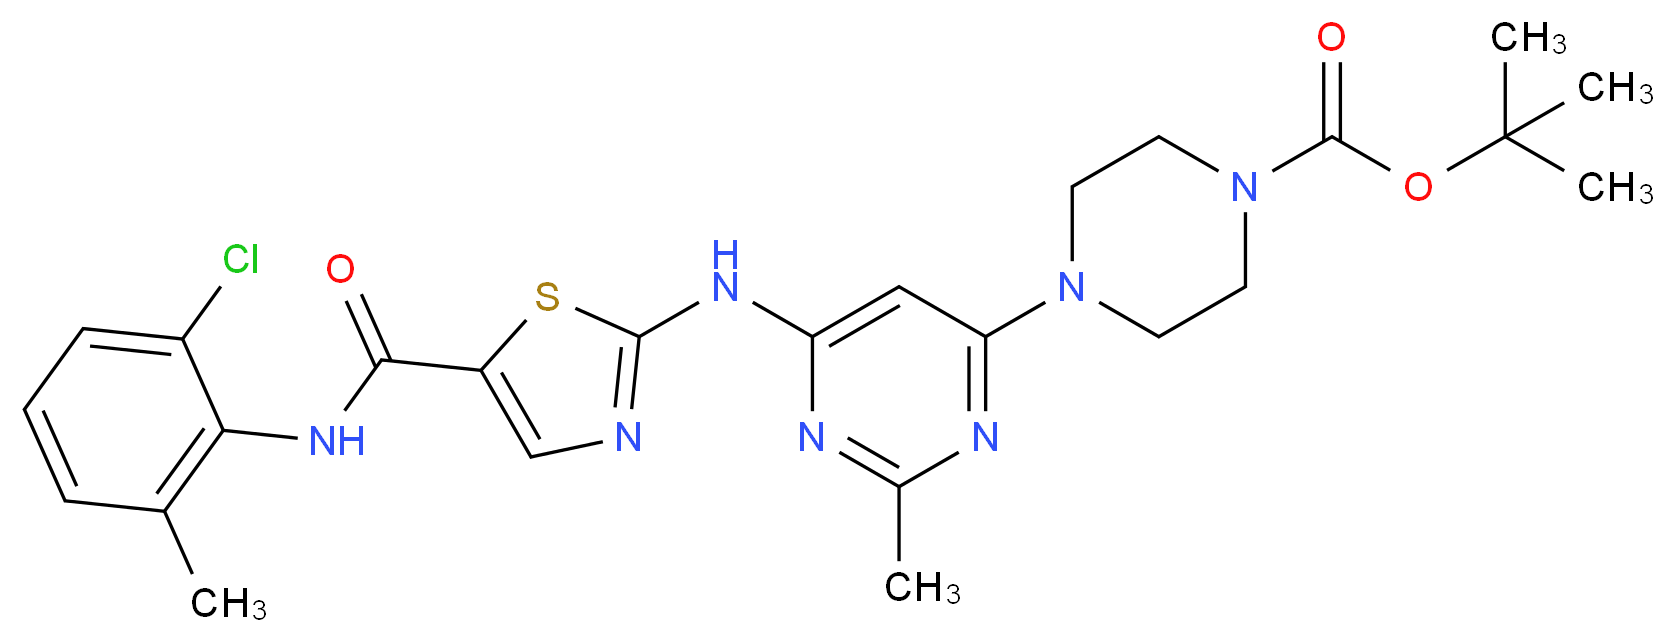 N-Boc-N-deshydroxyethyl Dasatinib_Molecular_structure_CAS_1159977-13-5)